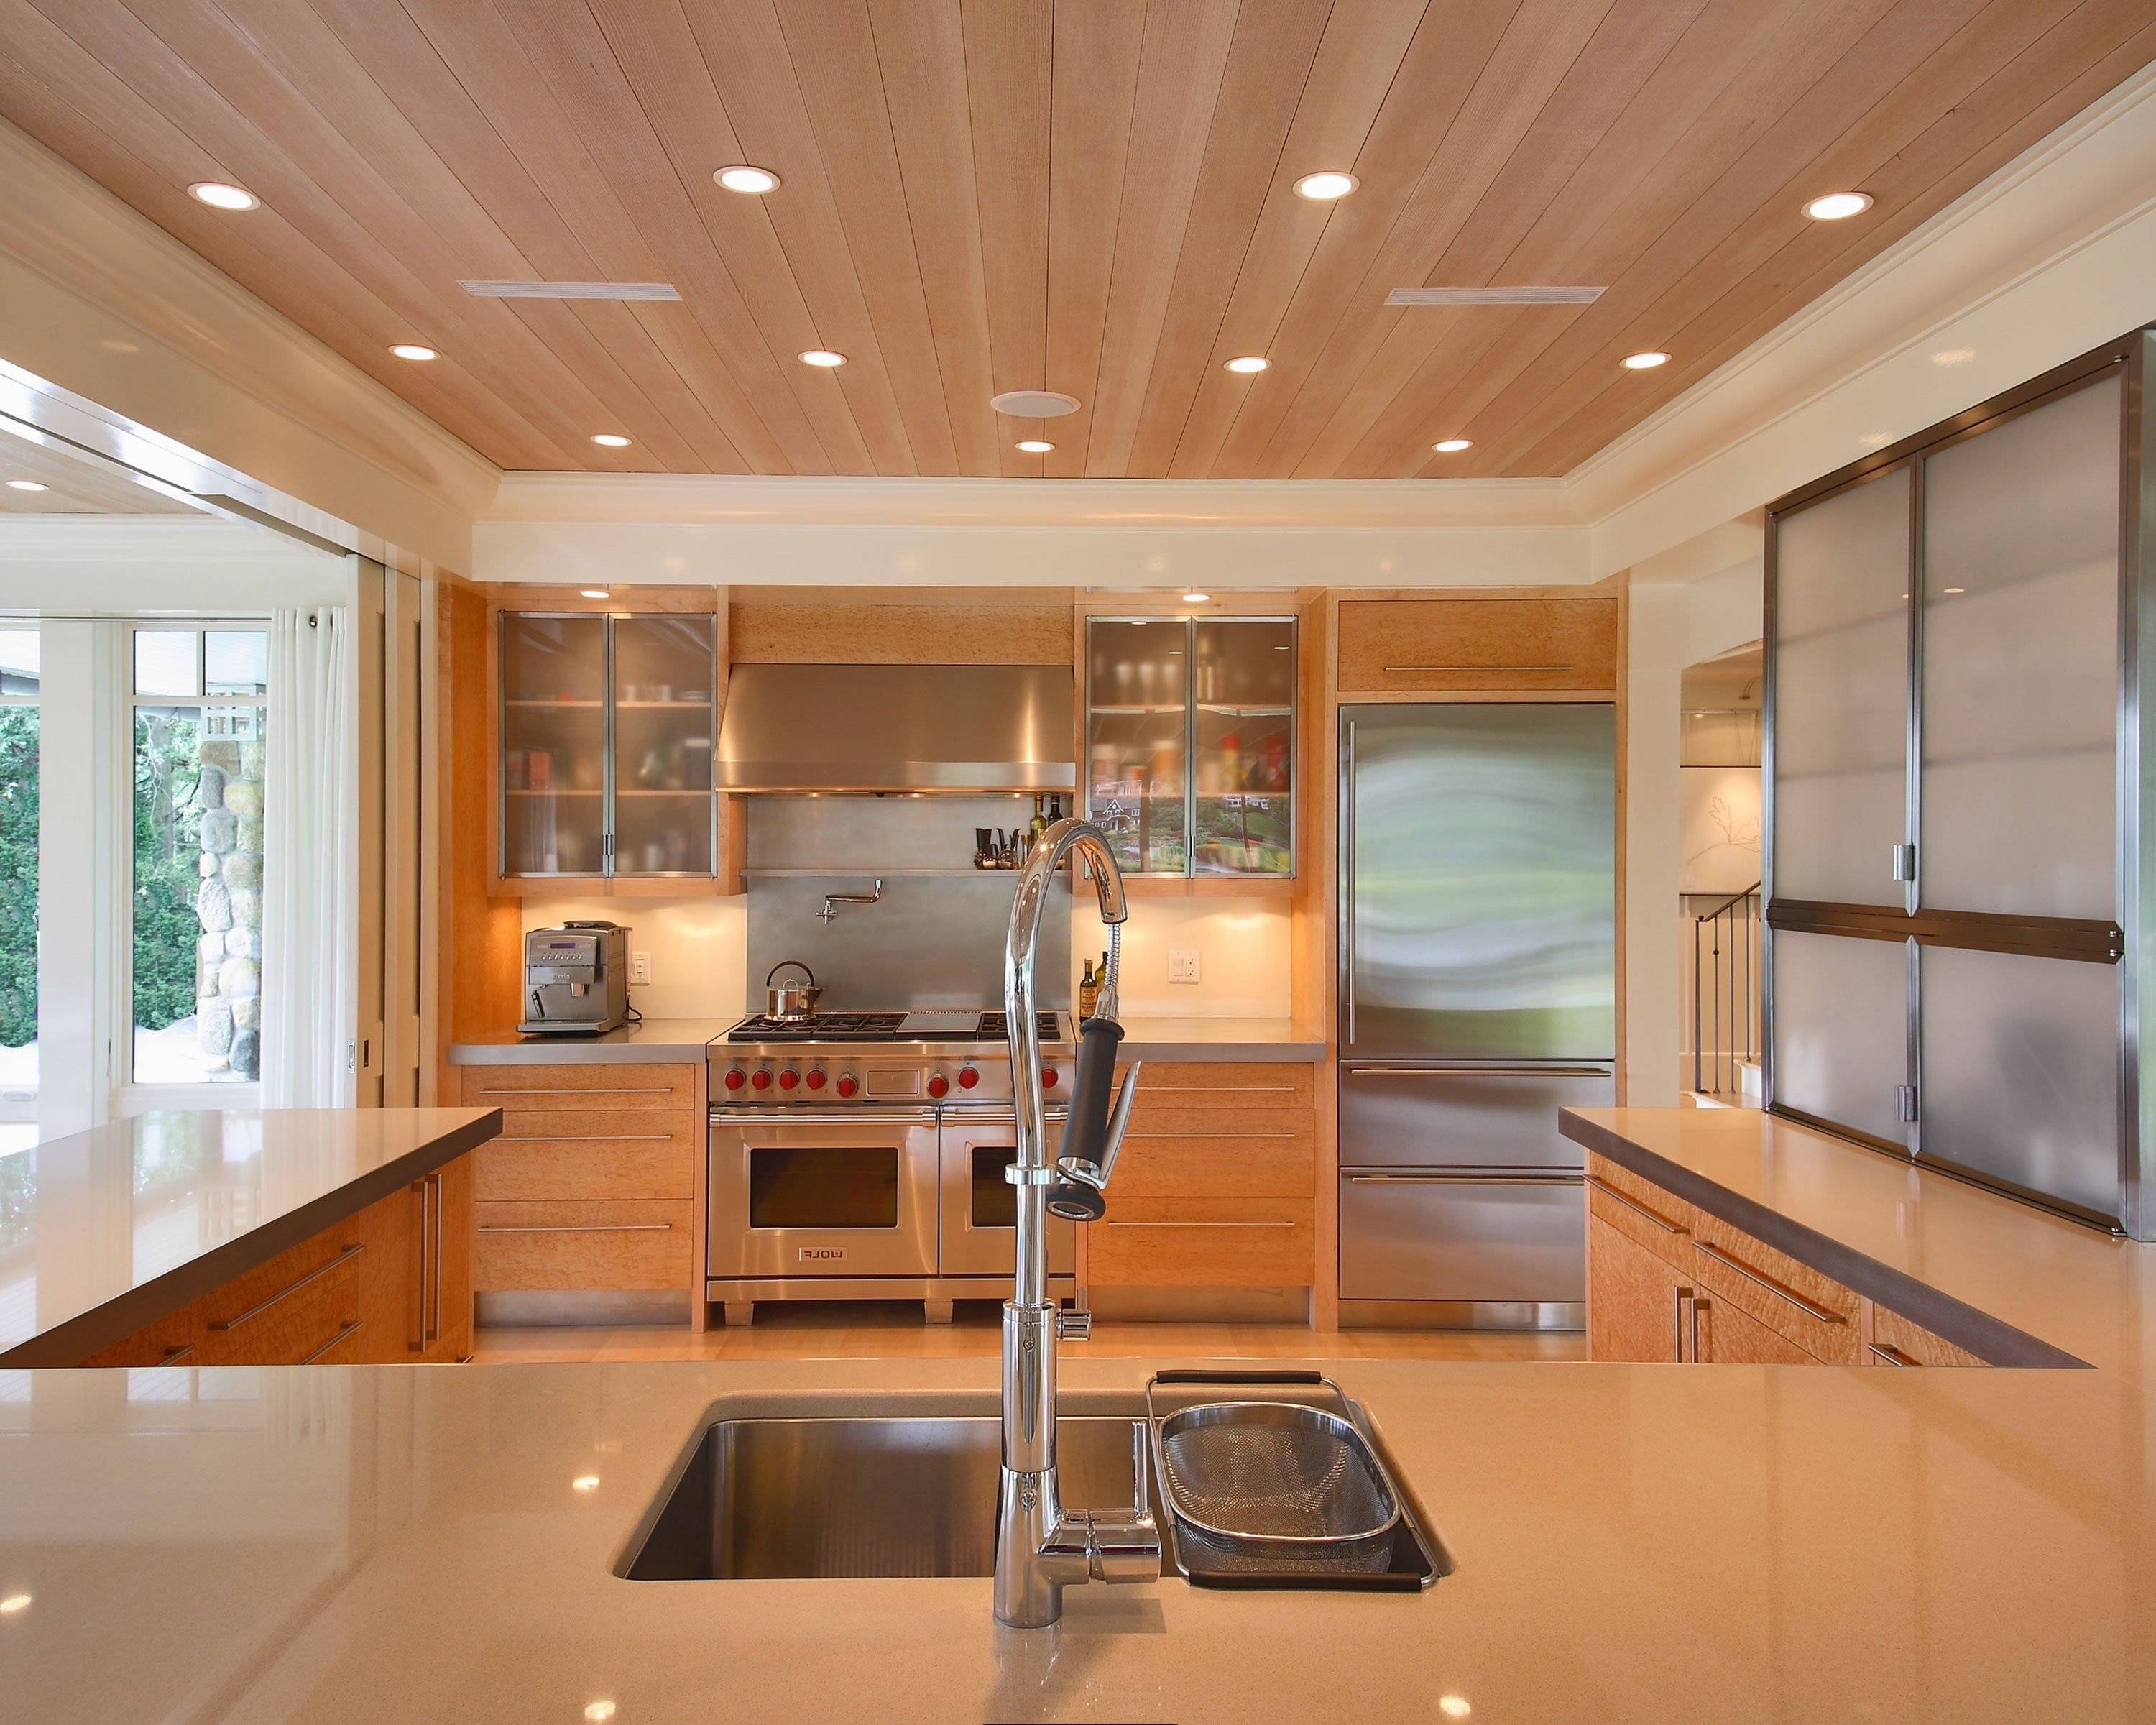 Какой потолок сделать на кухне - возможные варианты отделки